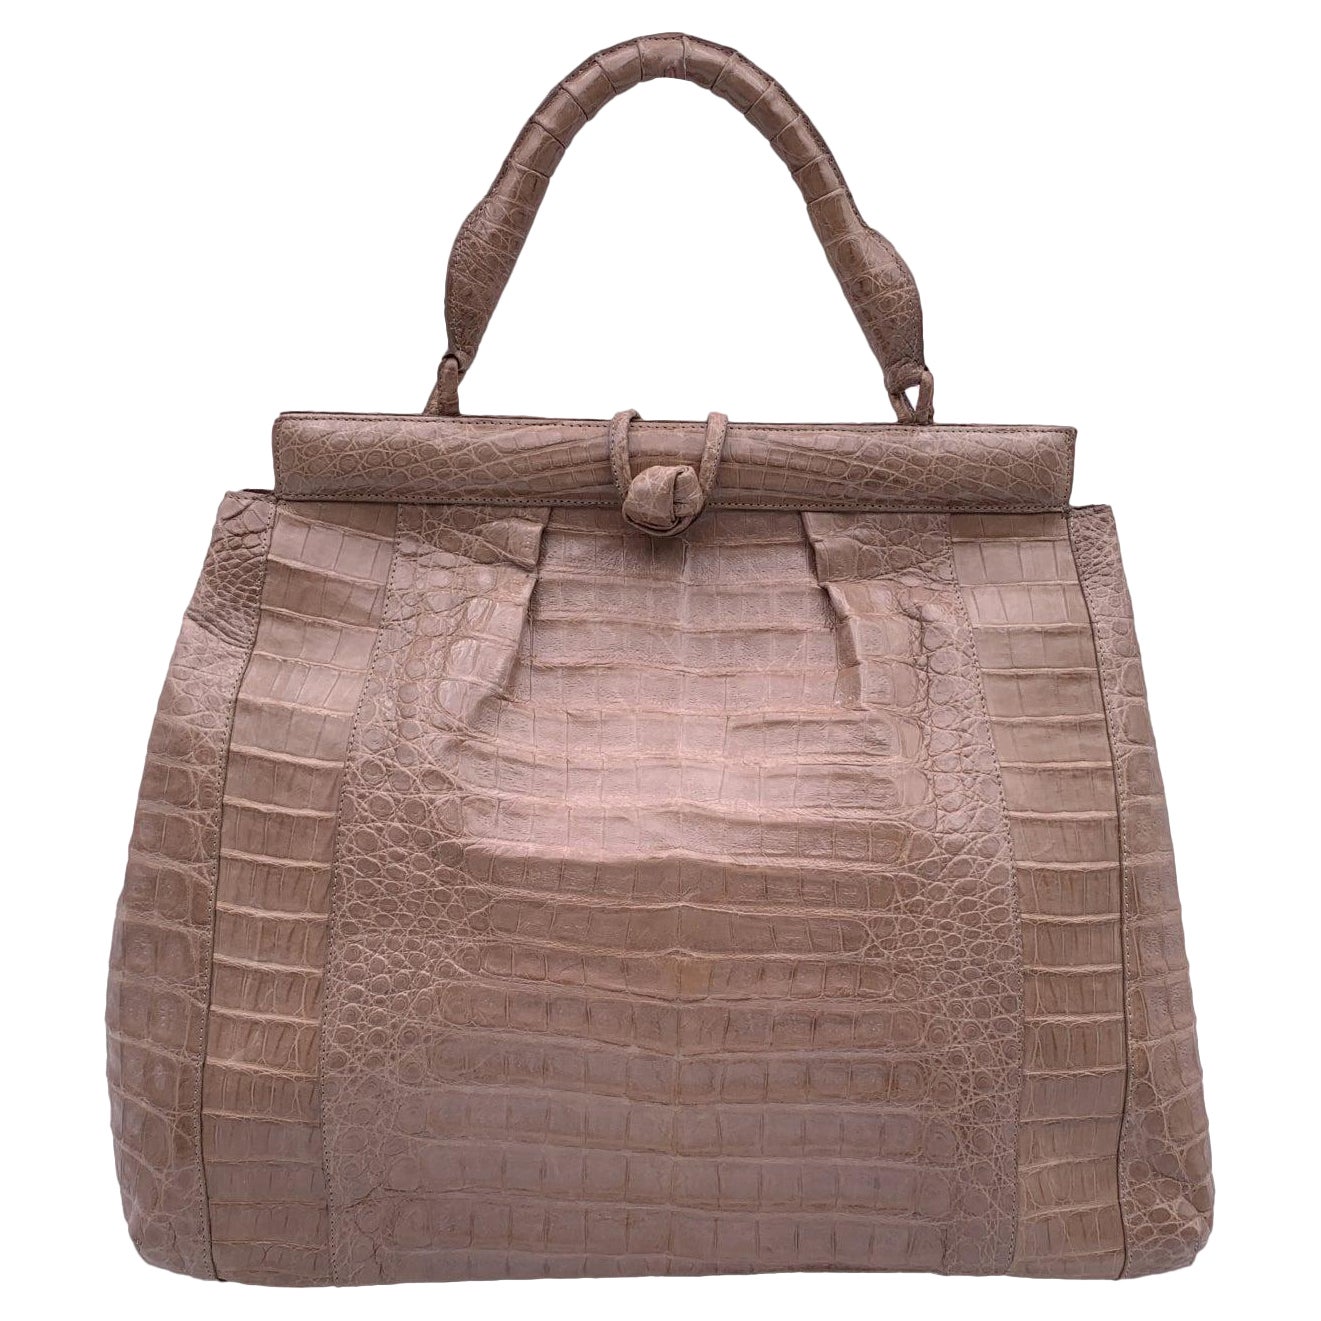 Nancy Gonzales Taupe Beige Leather Satchel Handbag Top Handle Bag